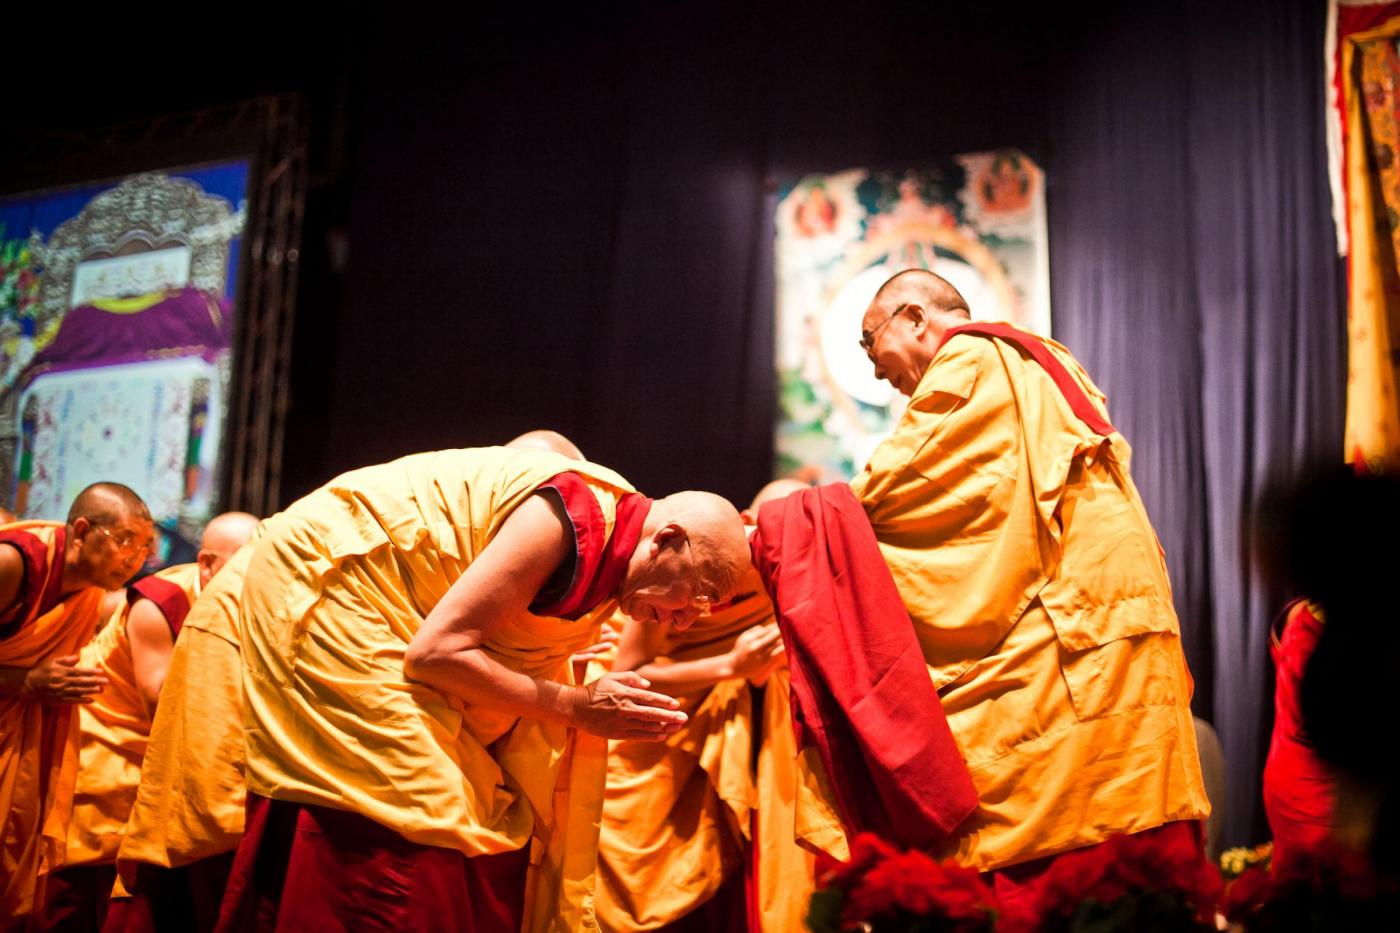 Dalai Lama in vista al Forum d'Assago01